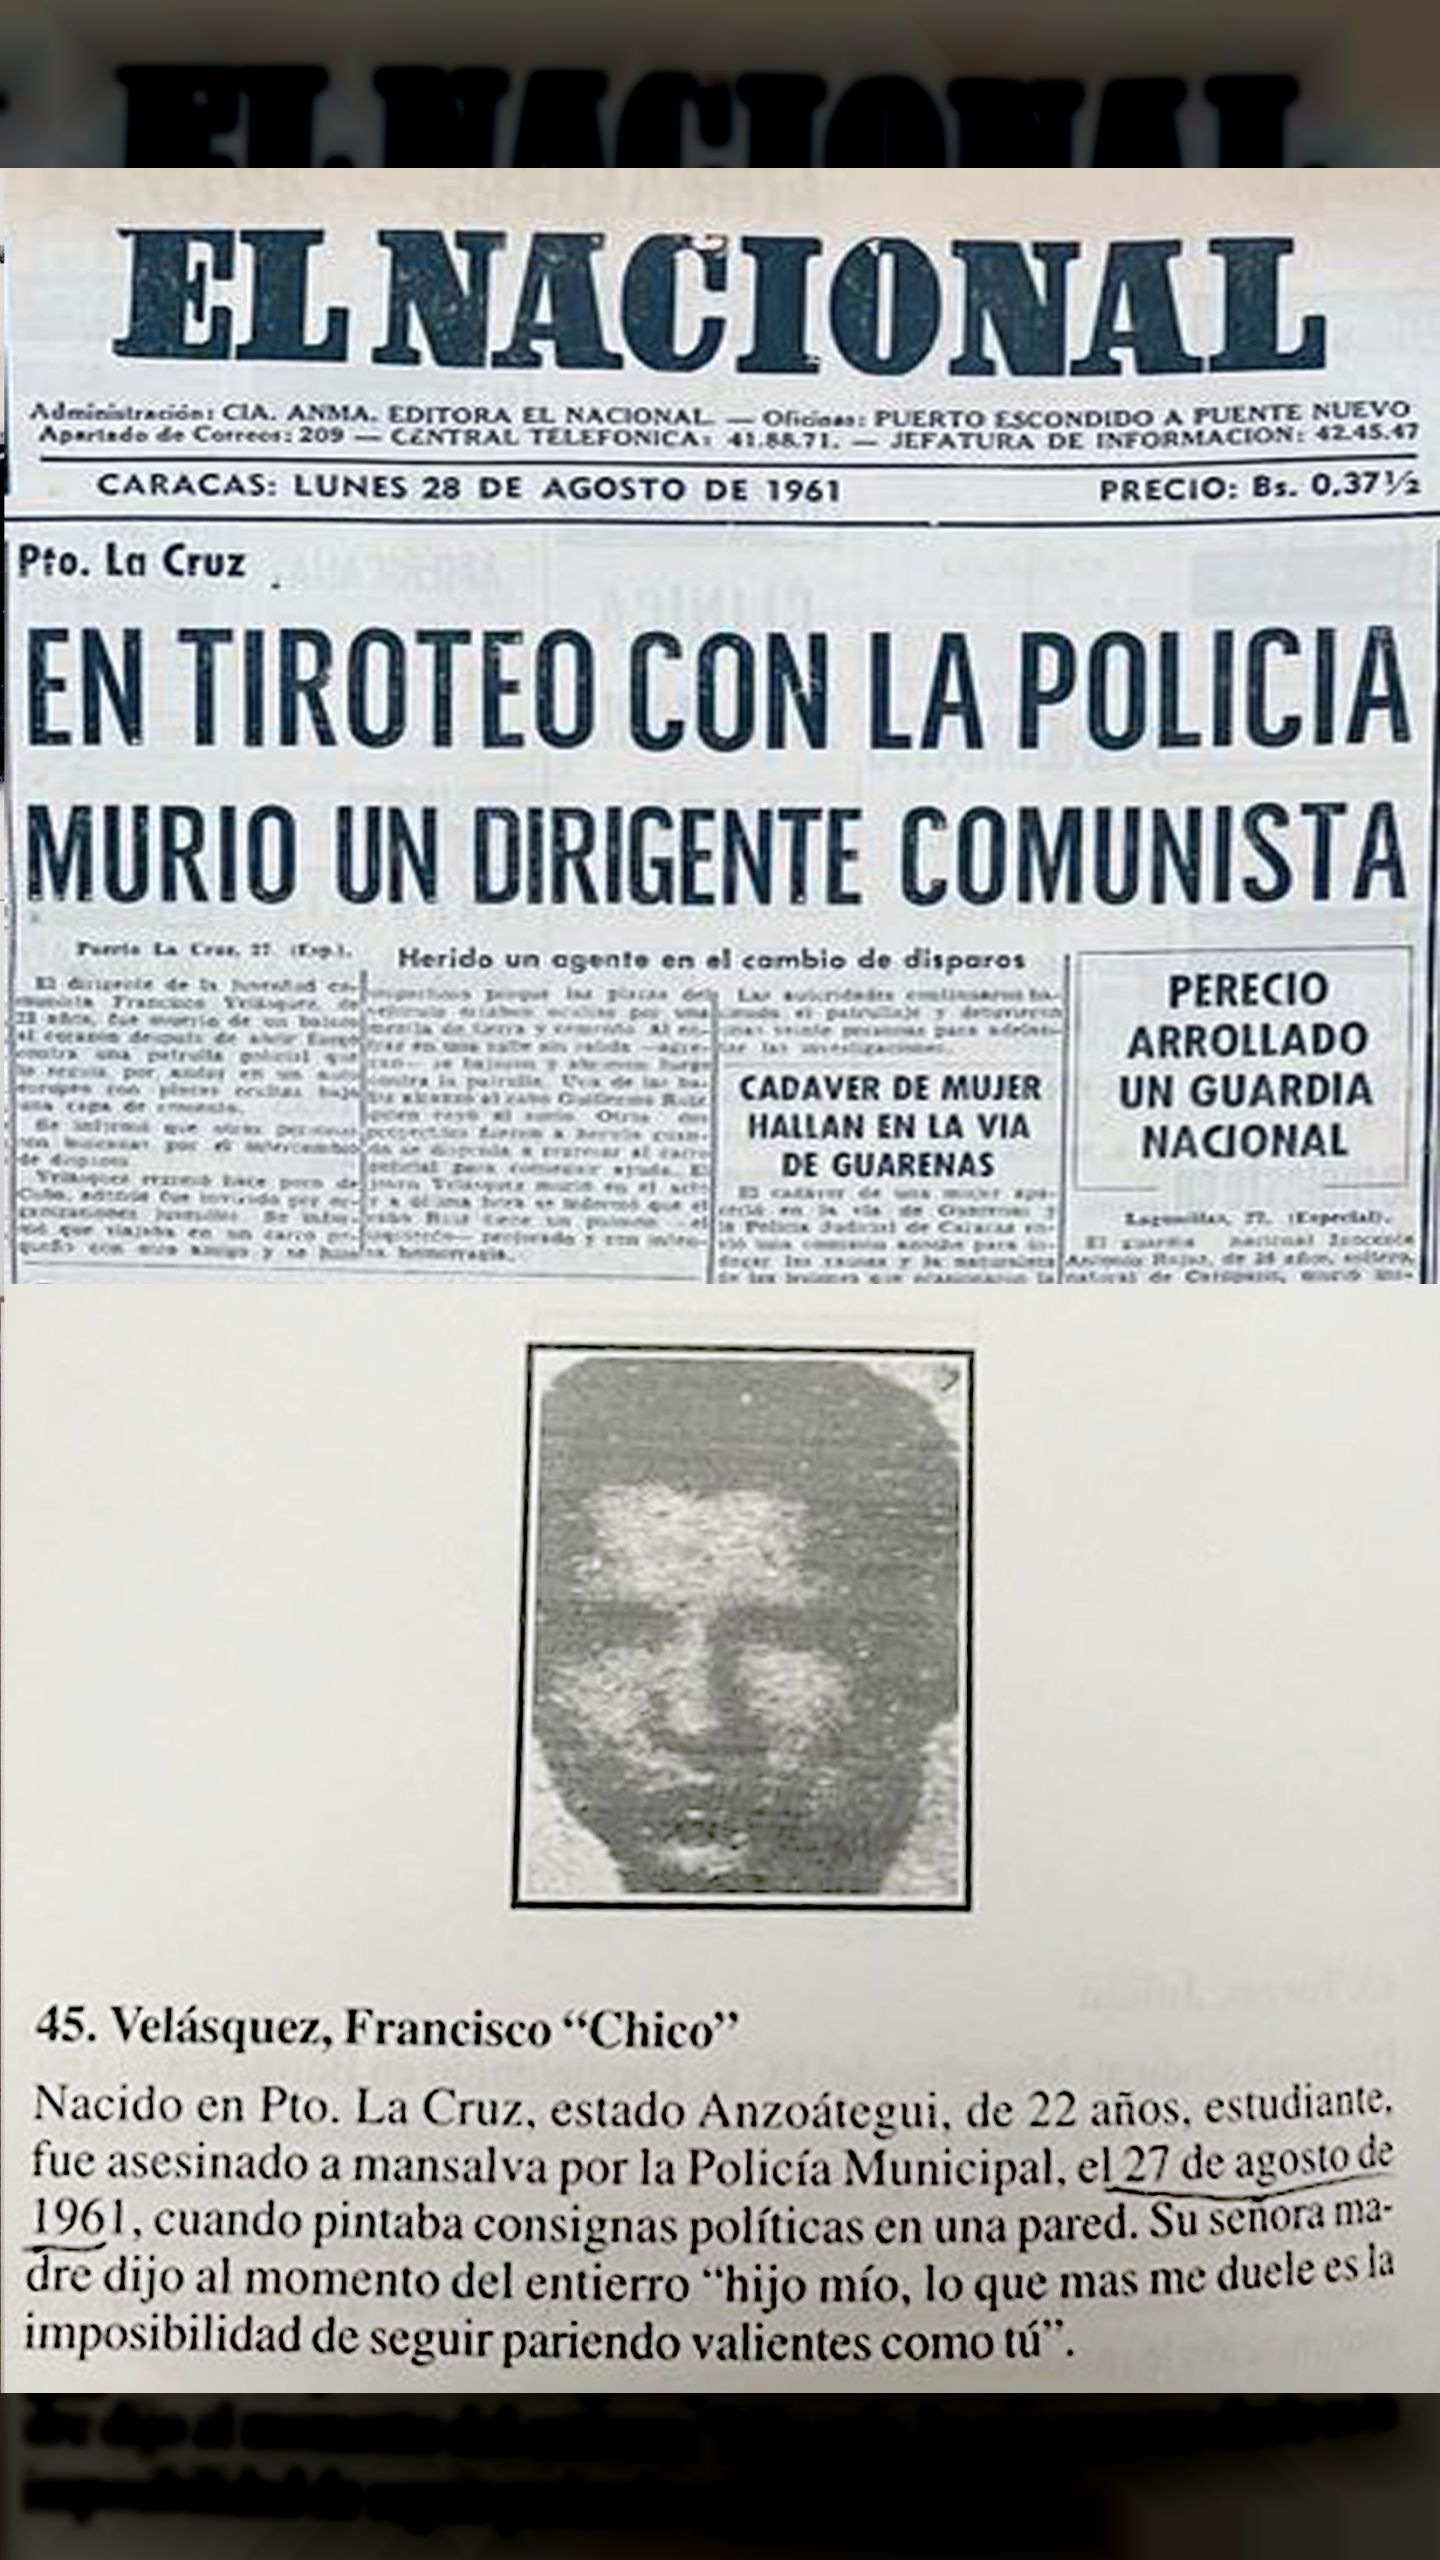 EN TIROTEO CON LA POLICIA MURIÓ UN DIRIGENTE COMUNISTA (EL NACIONAL, 28 DE AGOSTO 1961)